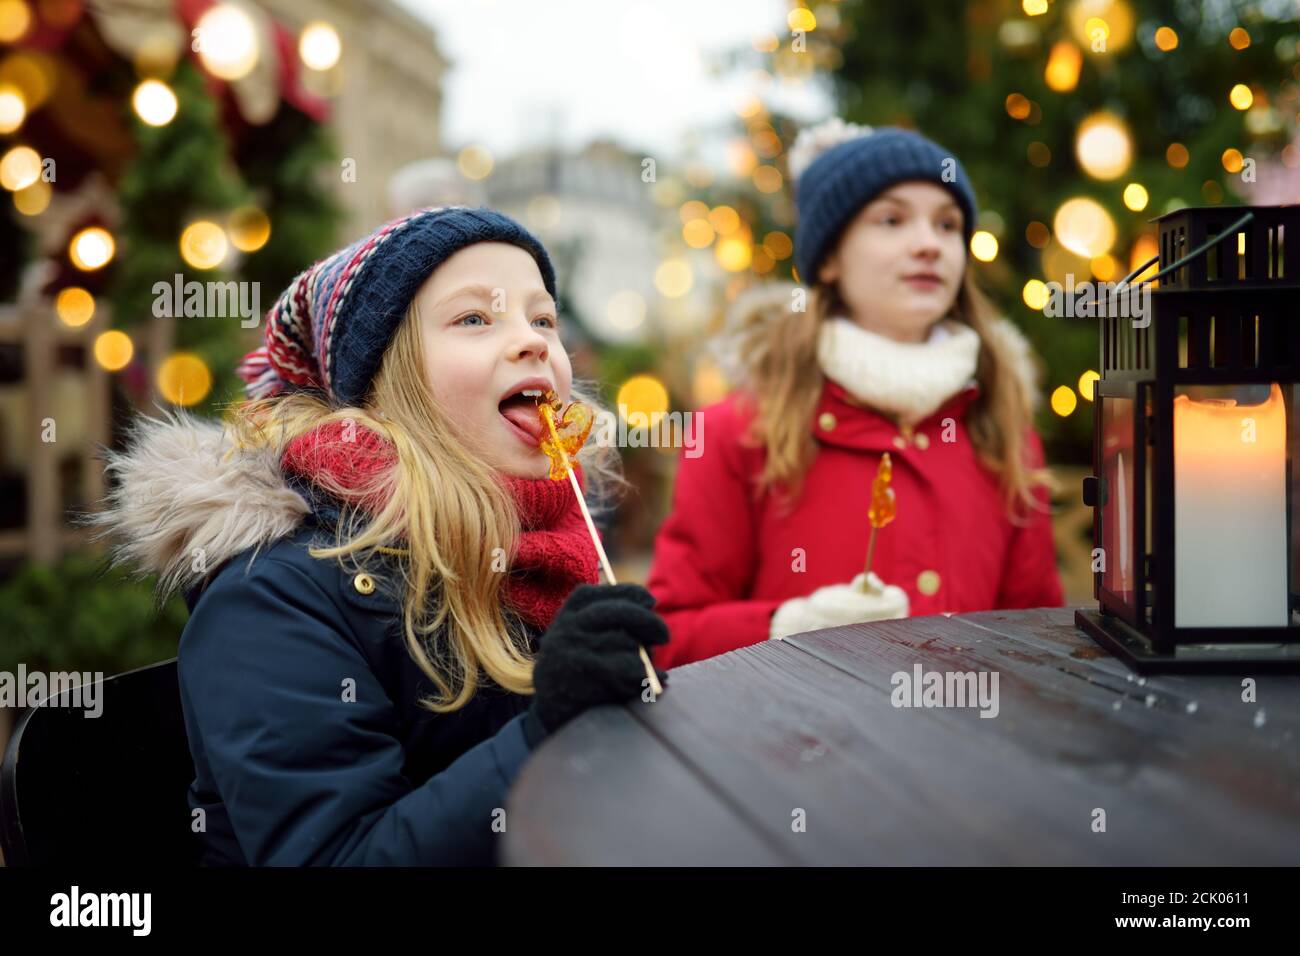 Deux adorables sœurs ayant en forme de coq sur les sucettes de Noël traditionnel à Riga, Lettonie. Les enfants bénéficiant des bonbons, confiseries et pain d'épices Banque D'Images